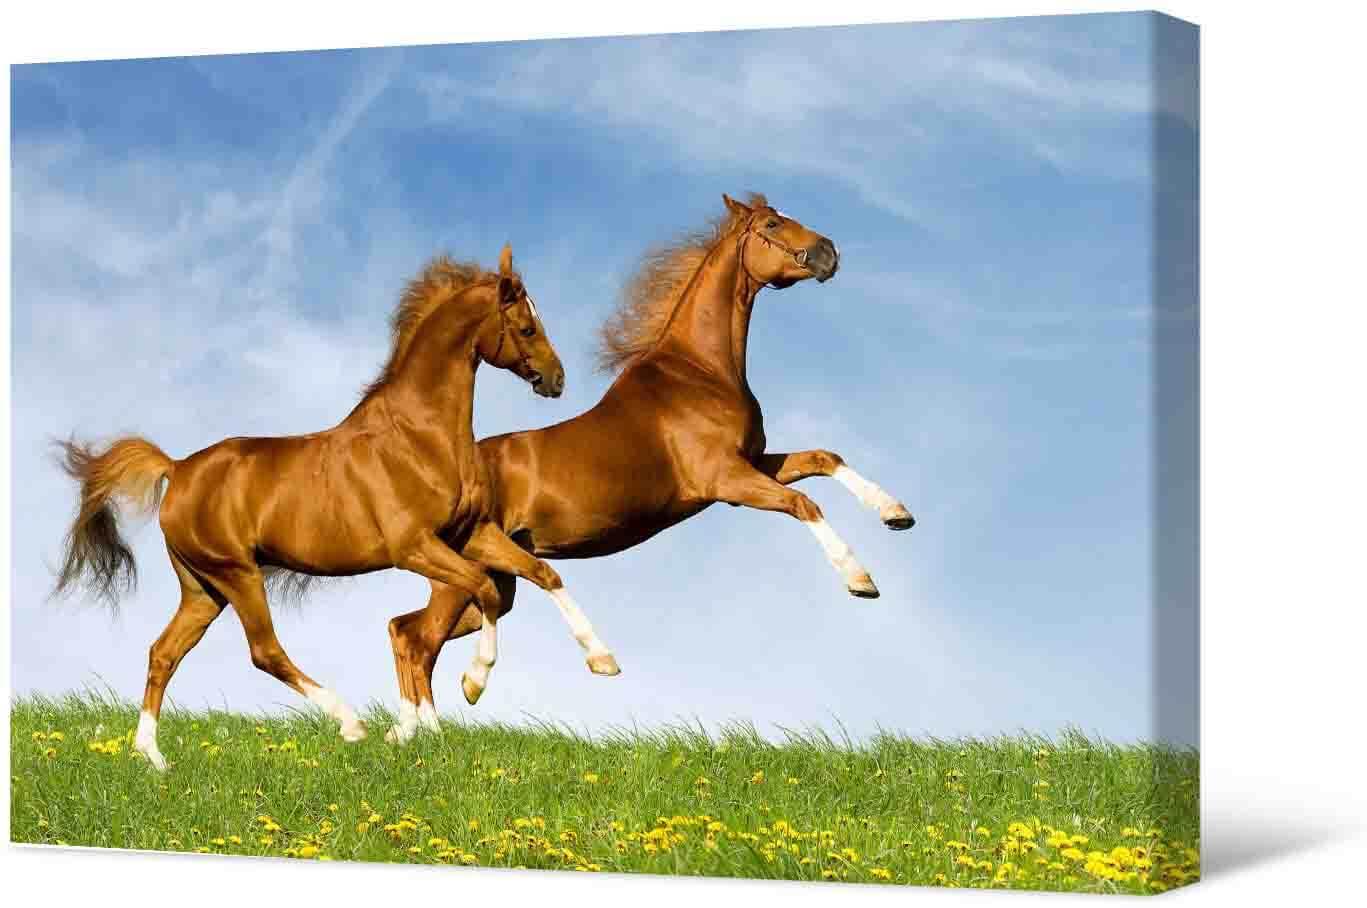 Bilde Fotoattēlā - divi zirgi